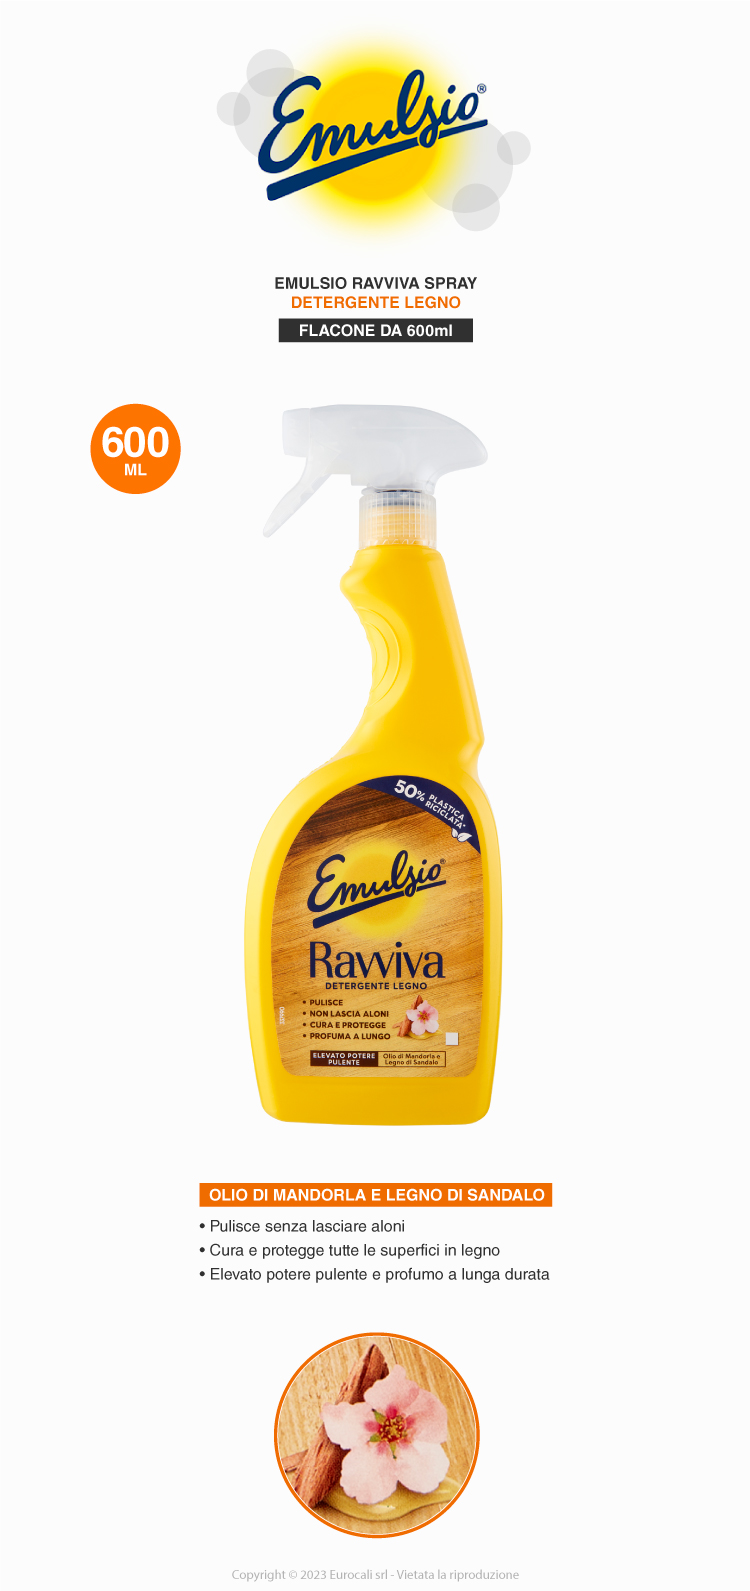 Emulsio Ravviva Detergente Legno spray olio di mandorla e legno di sandalo per ogni tipologia di superfici in legno 600ml